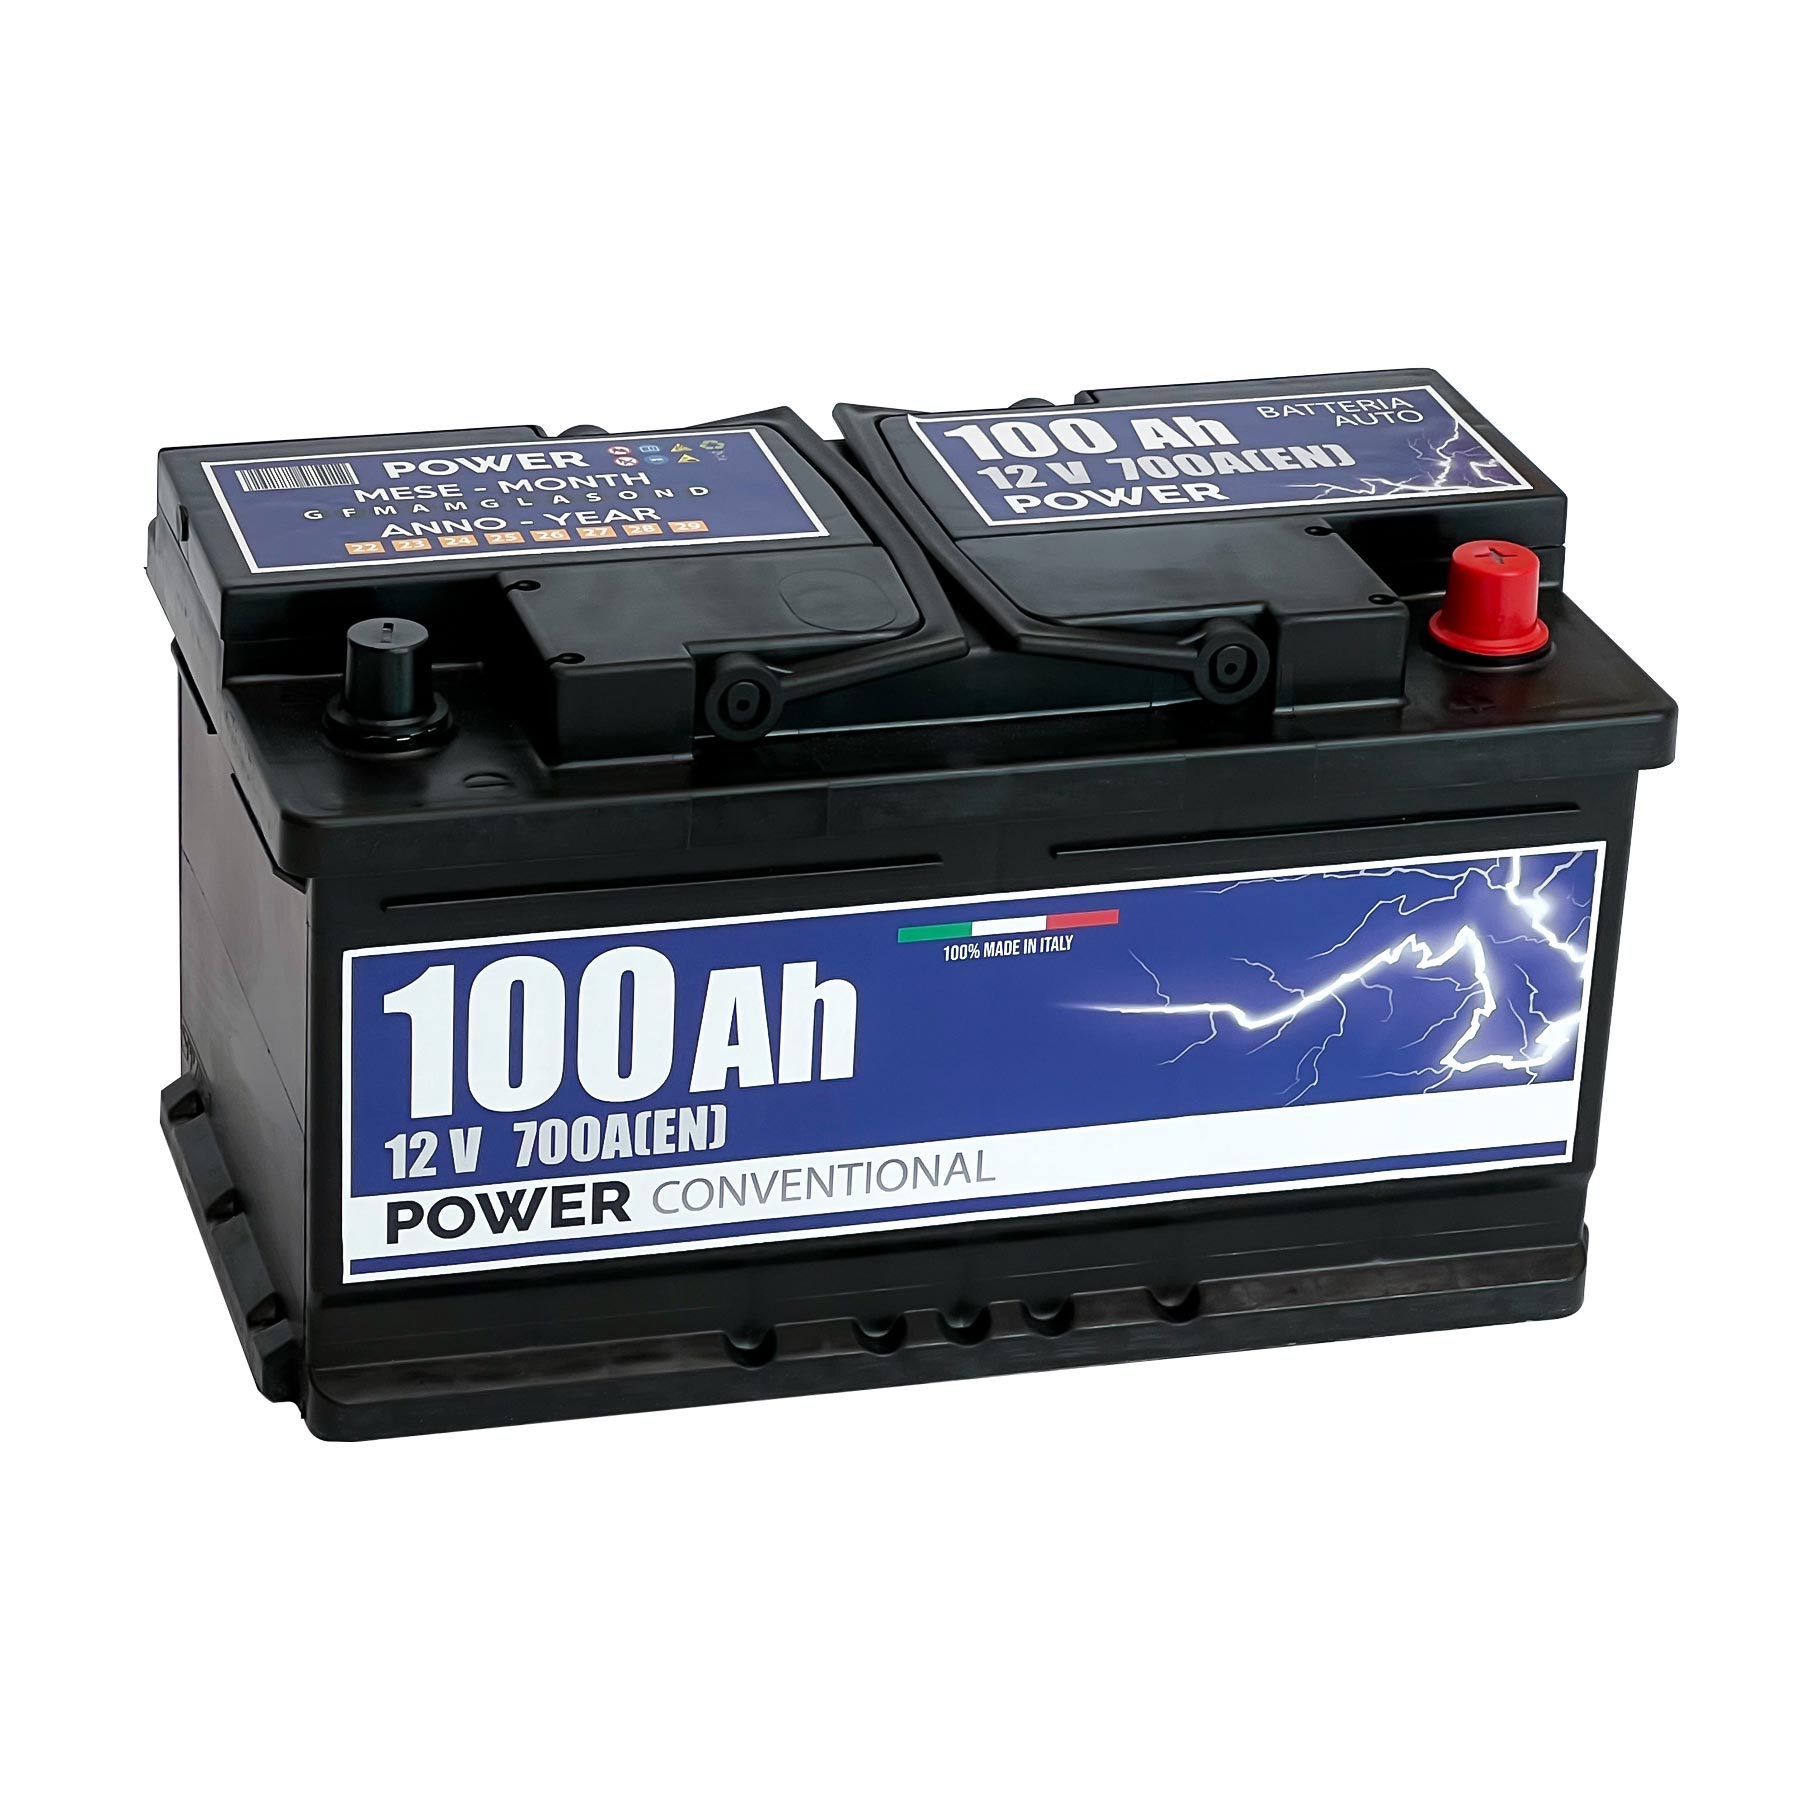  Varta Blue Dynamic E23 Batterie Voitures, 12 V 70Ah 630 Amps  (En)